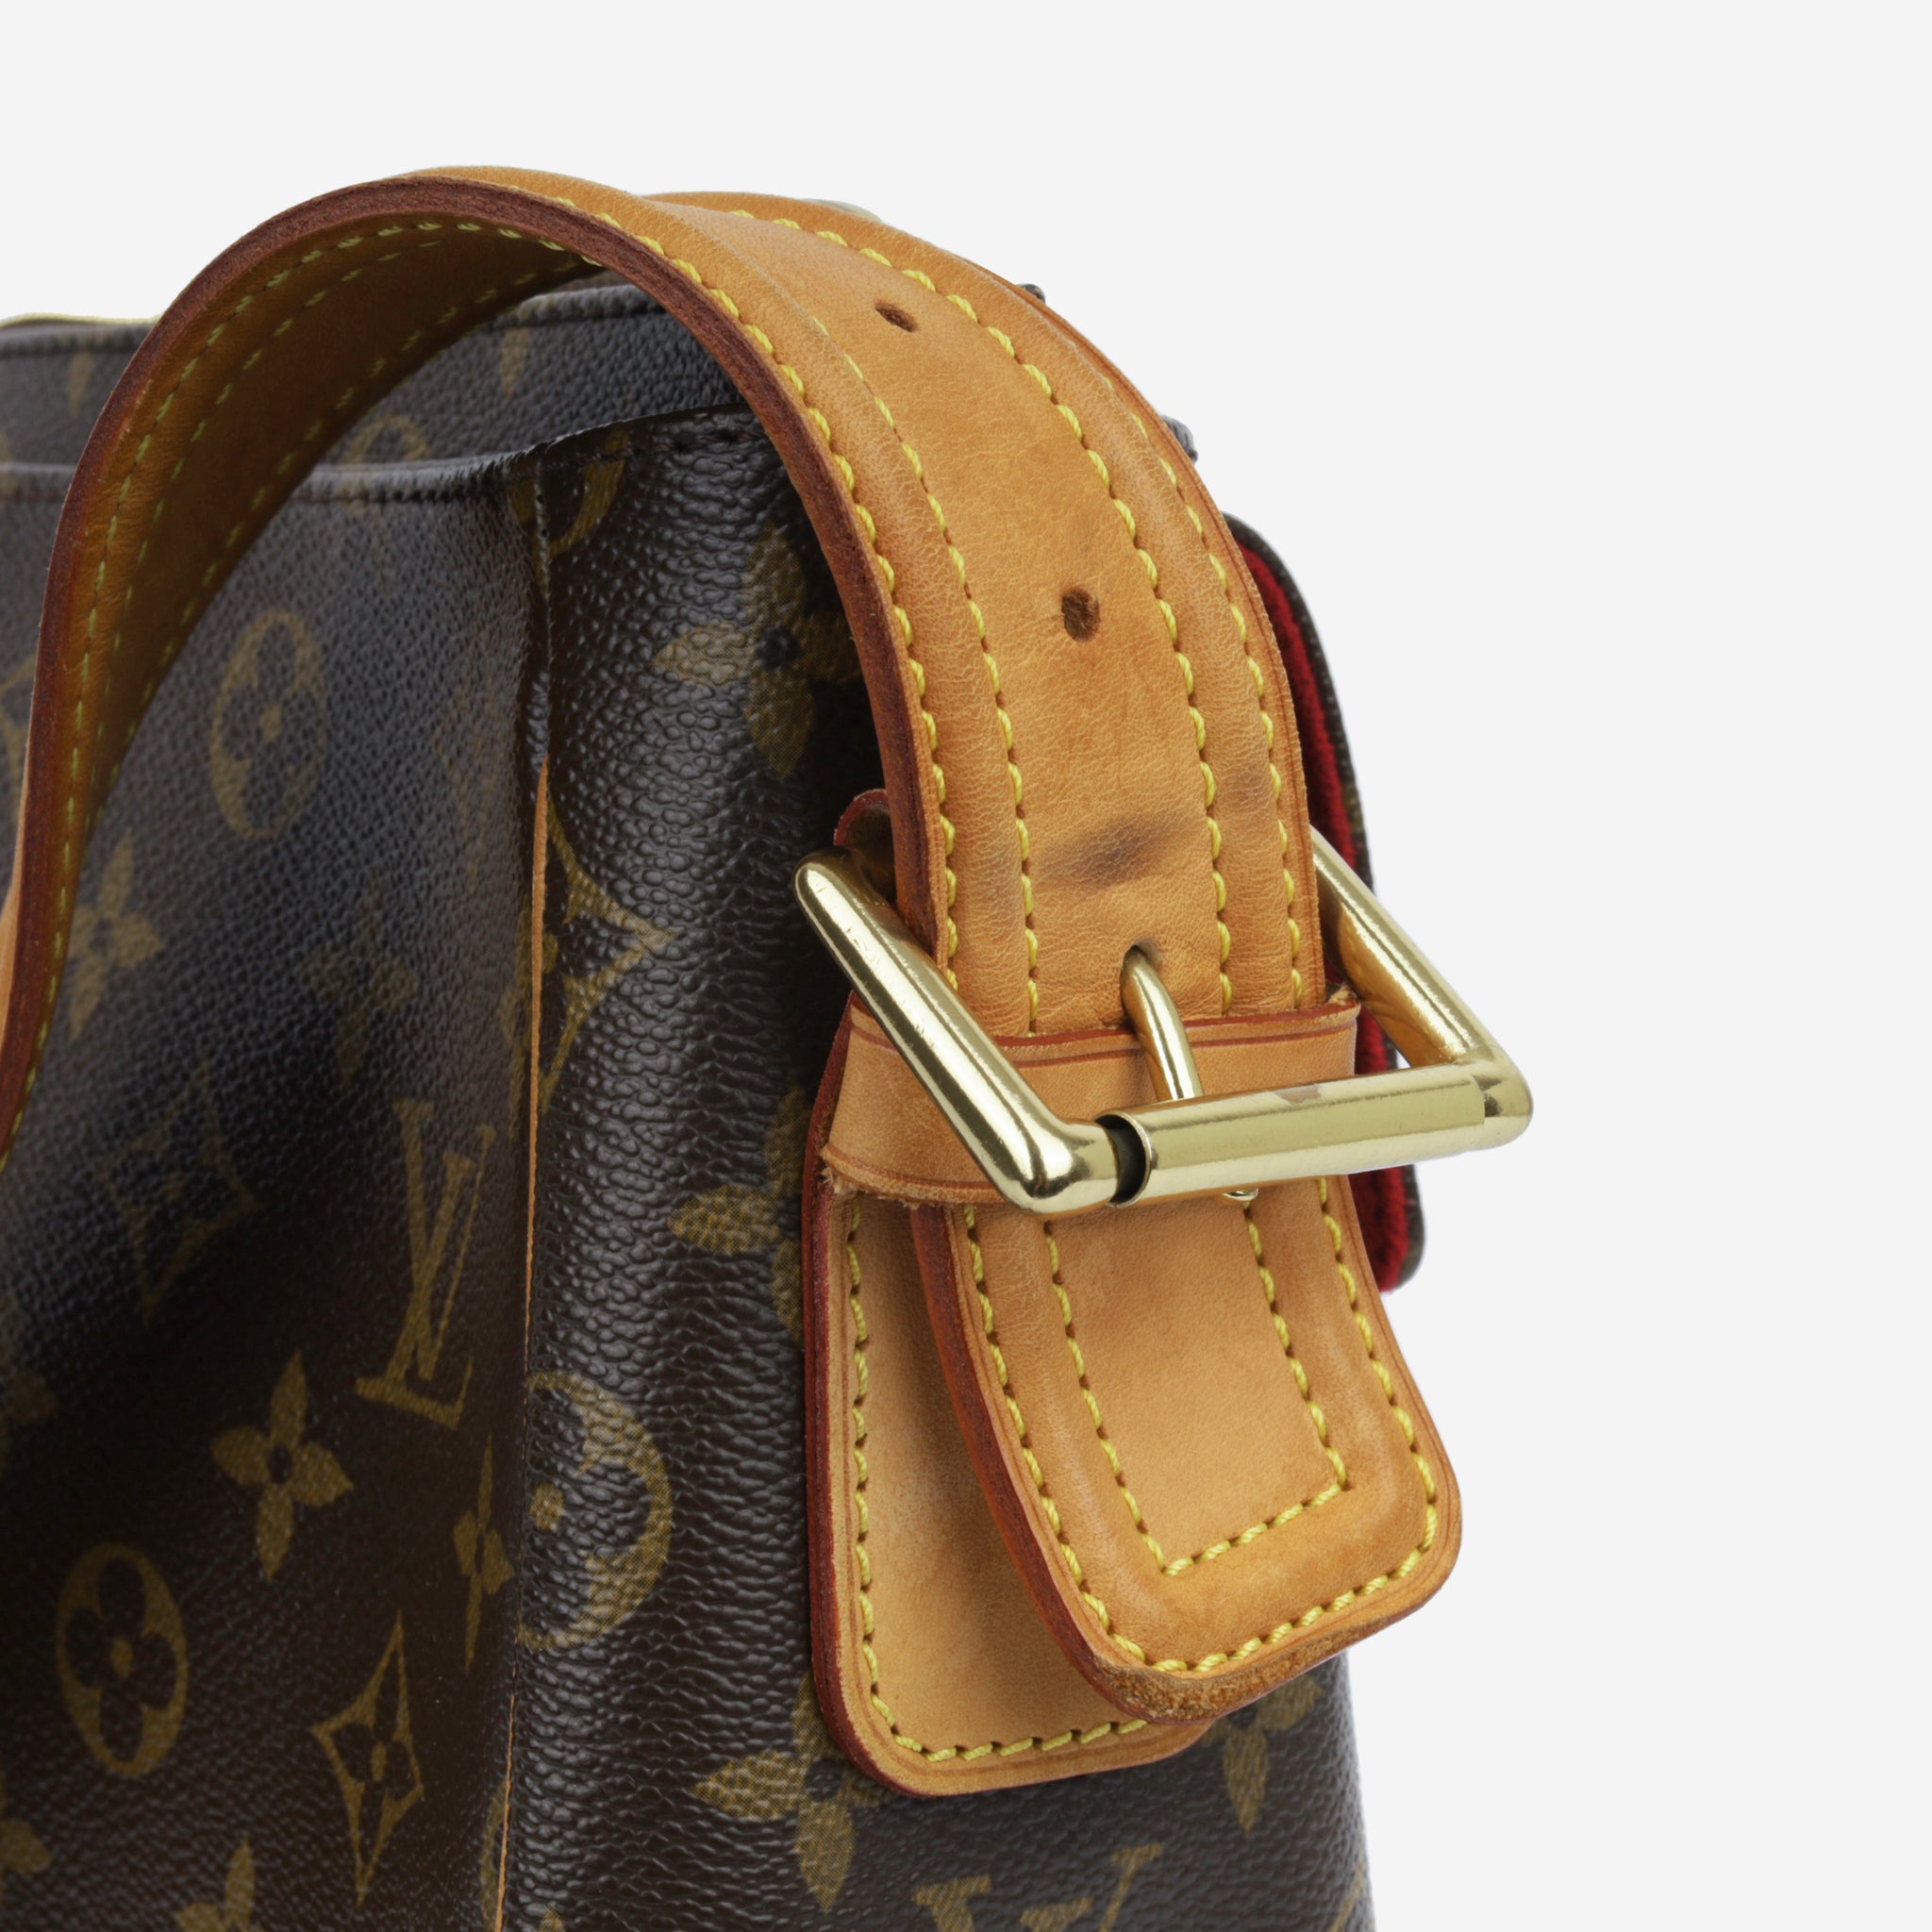 Louis Vuitton Louis Vuitton Viva Cite PM Monogram Canvas Shoulder Bag